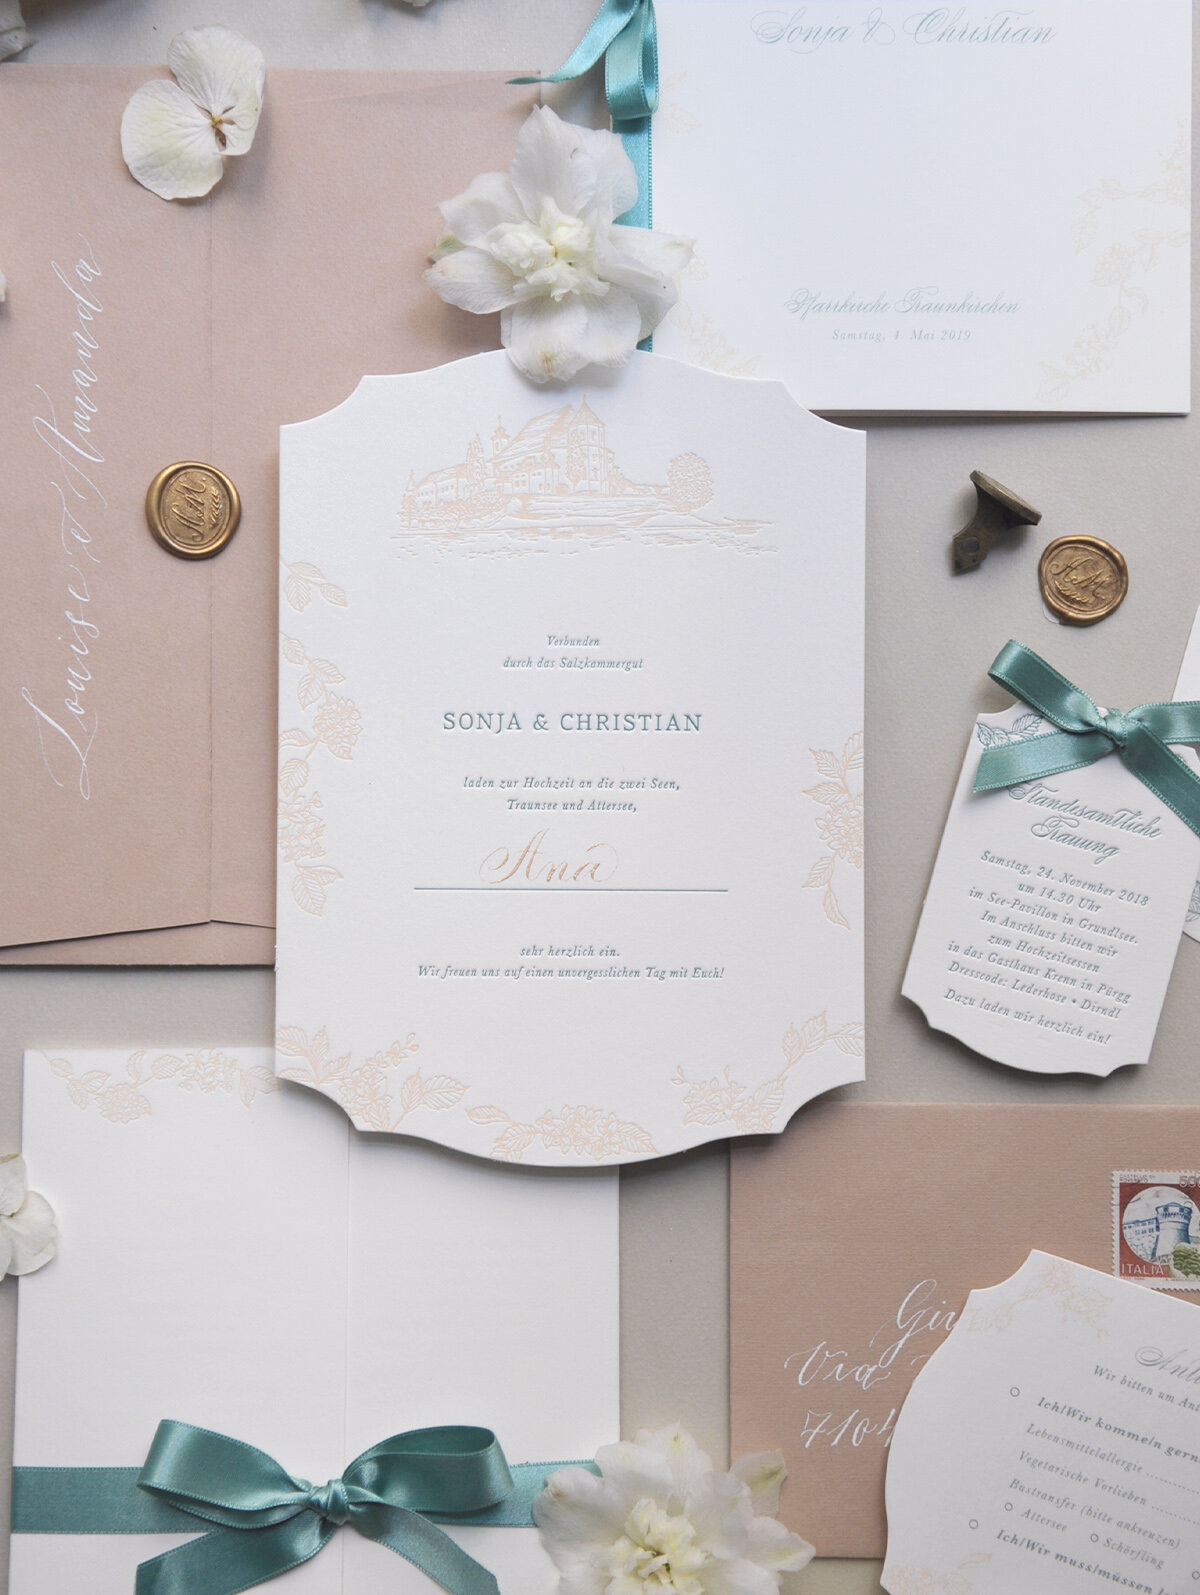 Maßgefertigte floreale Hochzeitspapeterie von Carissimo Letterpress mit gestanzter Einladung, RSVP Karte & Anhänger Kärtchen